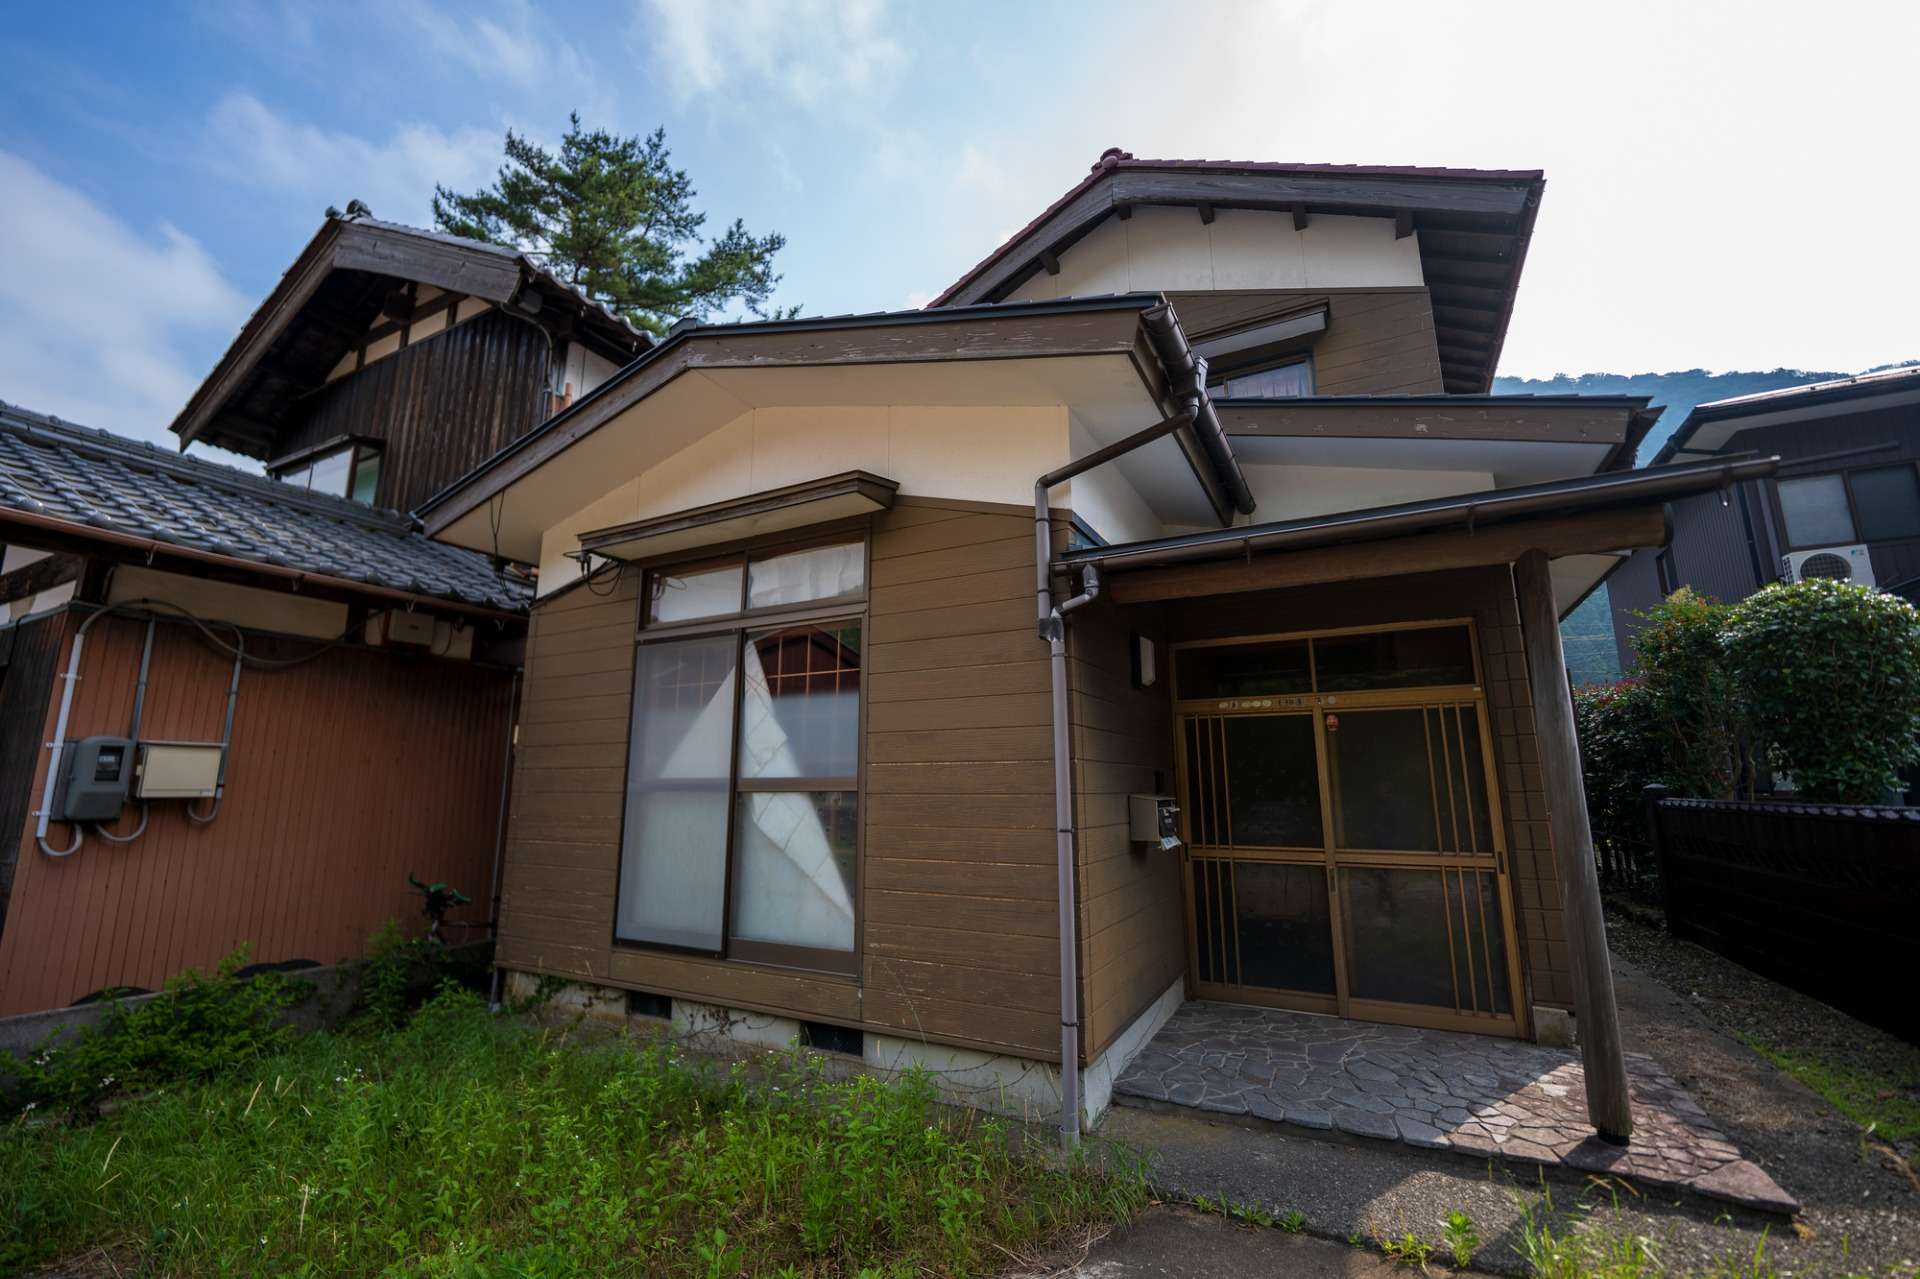 大阪市平野区のお客様からのご質問　住宅ローン以外にも借り入れがあり、弁護士に相談されている方へ